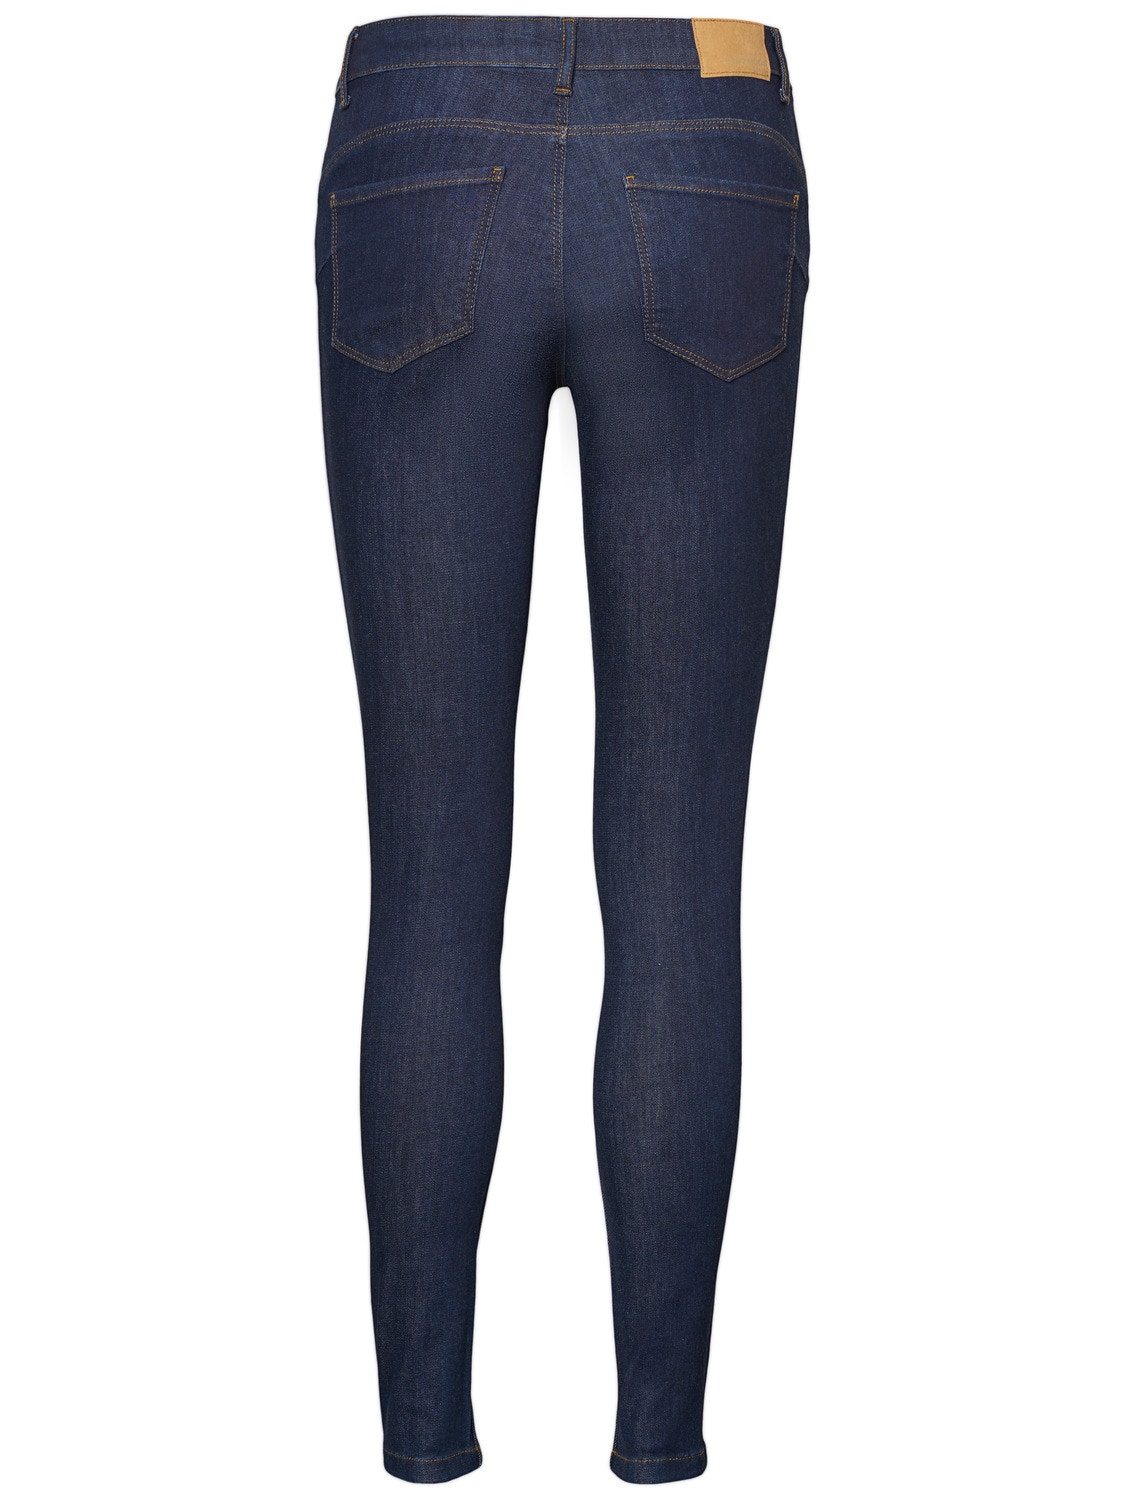 Vero Moda VMSEVEN Taille moyenne Slim Fit Jeans -Dark Blue Denim - 10183948